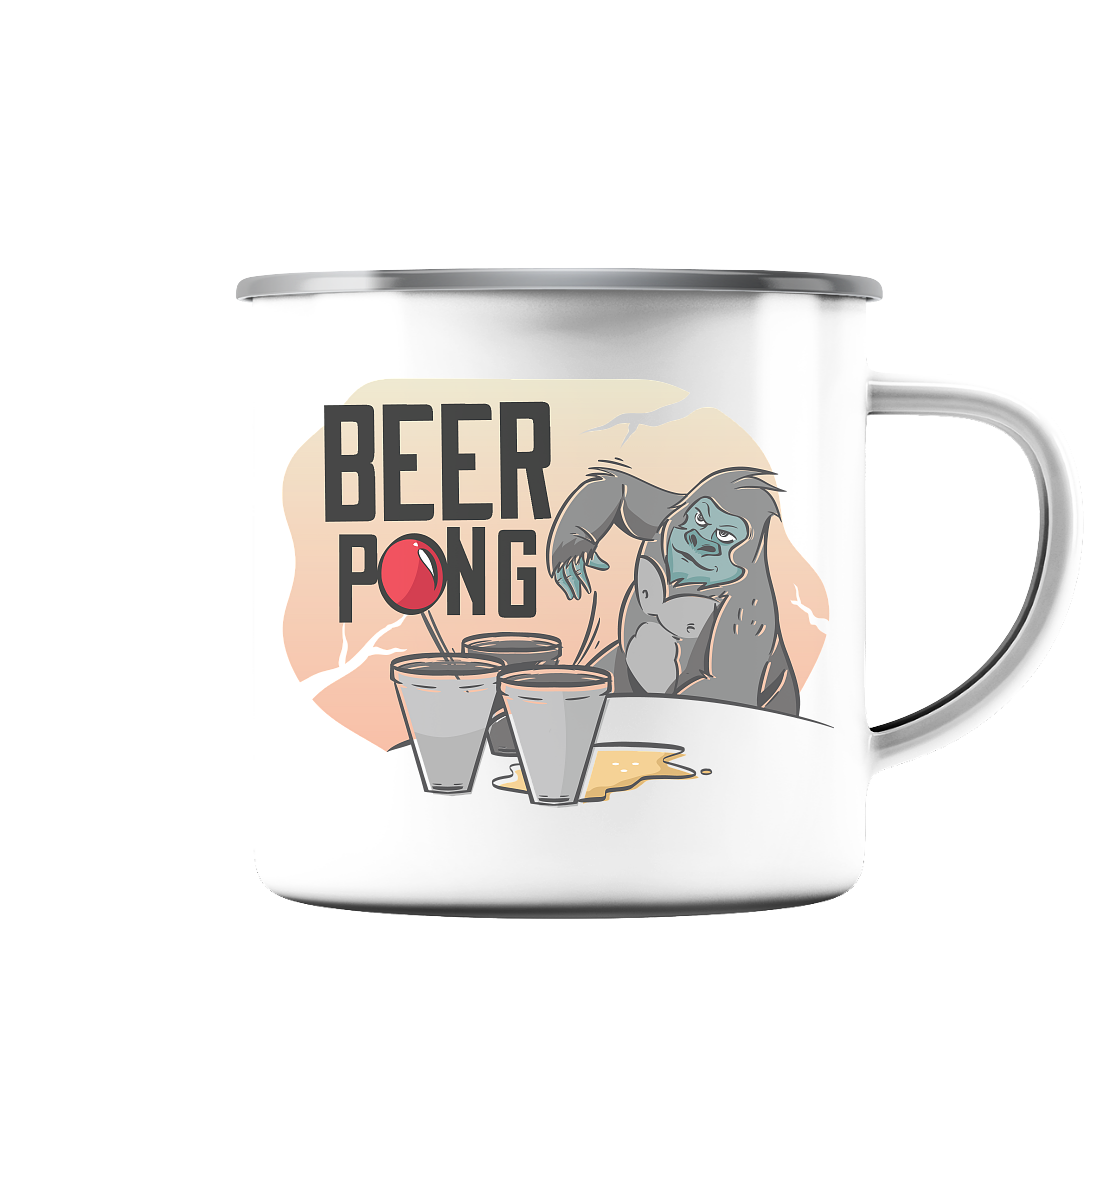 Bier - Beer Pong Gorilla  - Emaille Tasse